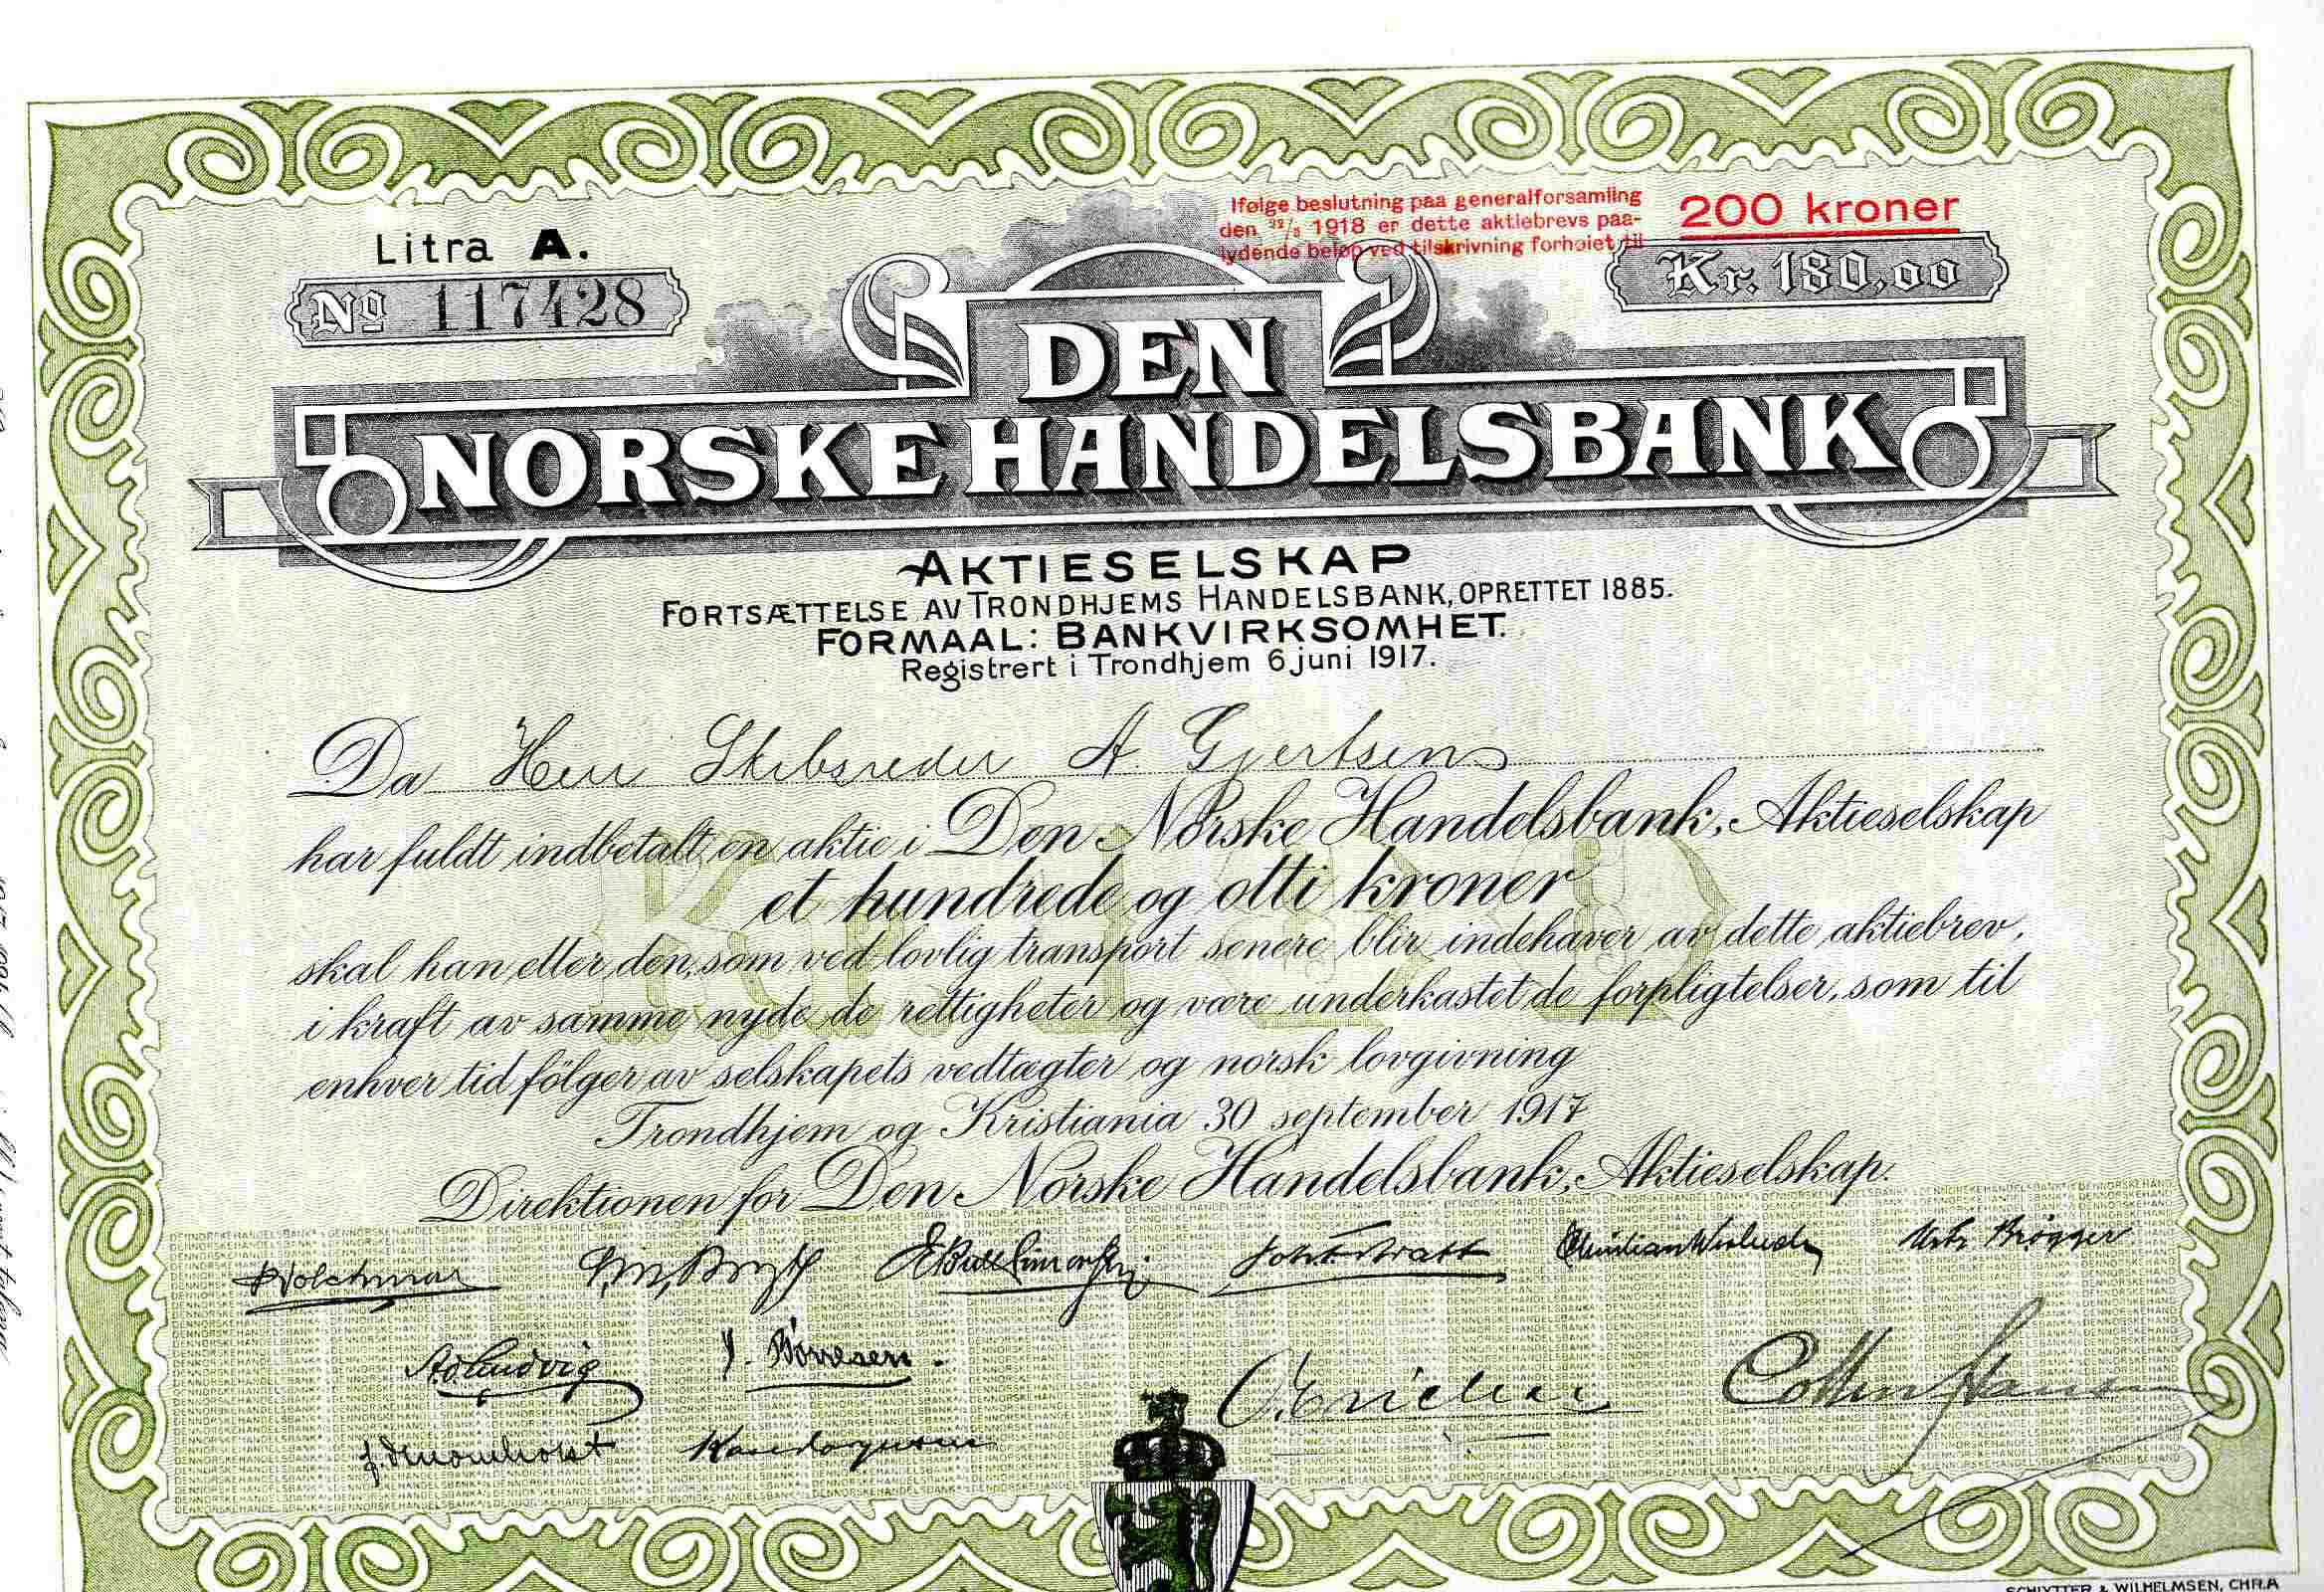 Den norske handelsbank kr 200/180 Litra A no117428 Trondhjem 1917